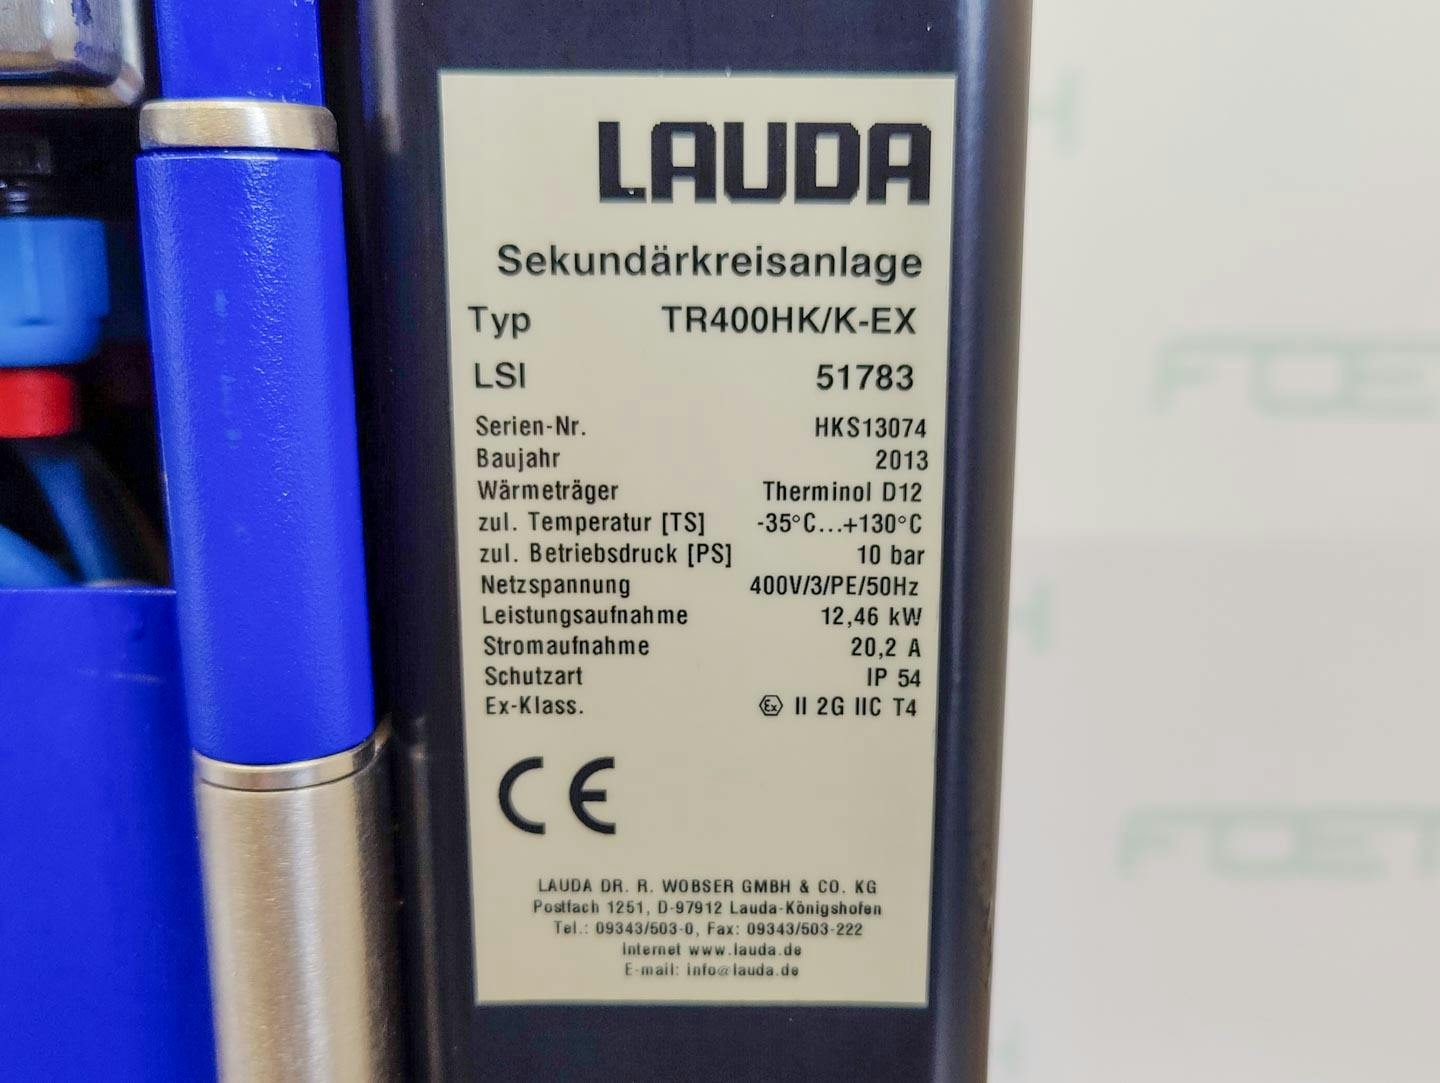 Lauda TR400 HK/KT-EX "secondary circuit system" - Temperature control unit - image 16